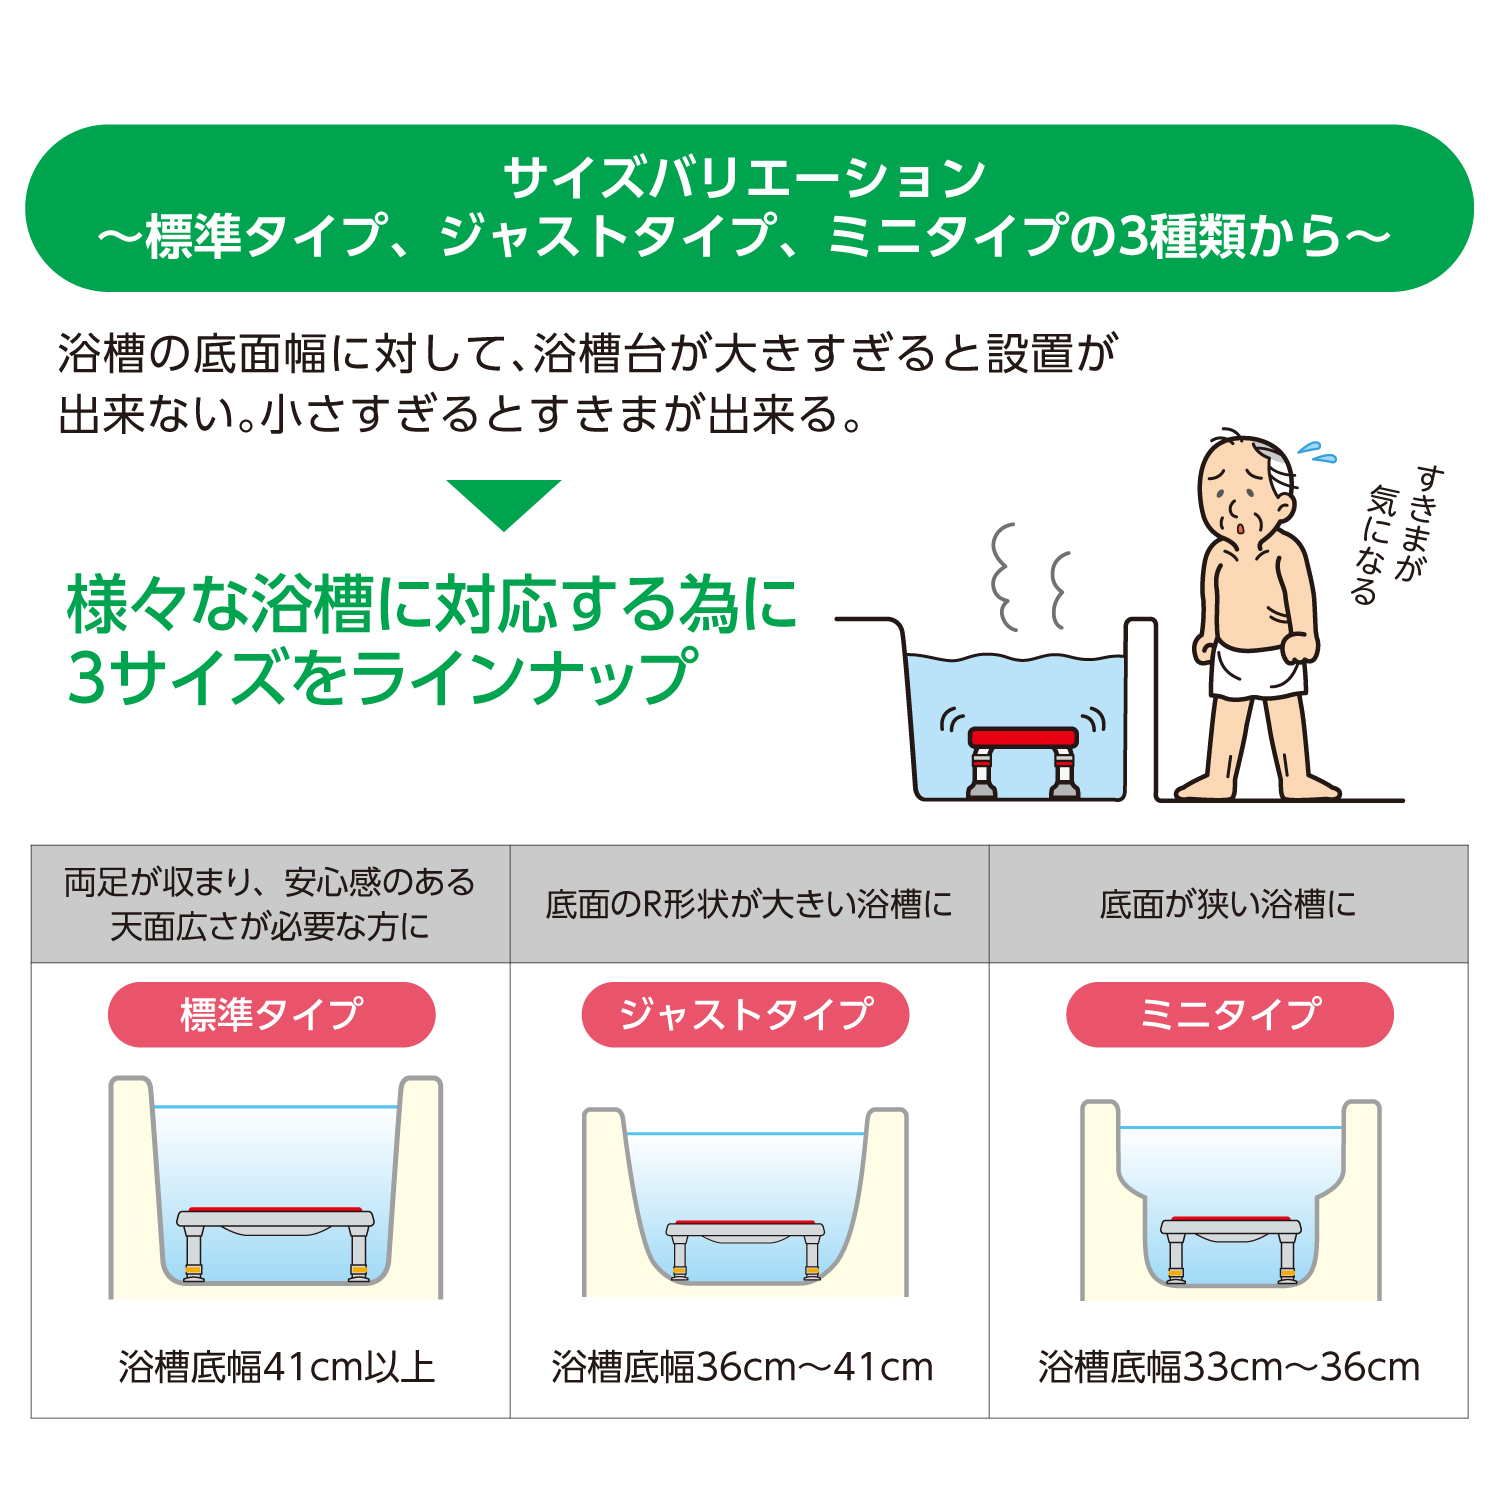 専門店品質 (アロン化成) ステンレス製浴槽台R あしぴた 標準 12-15